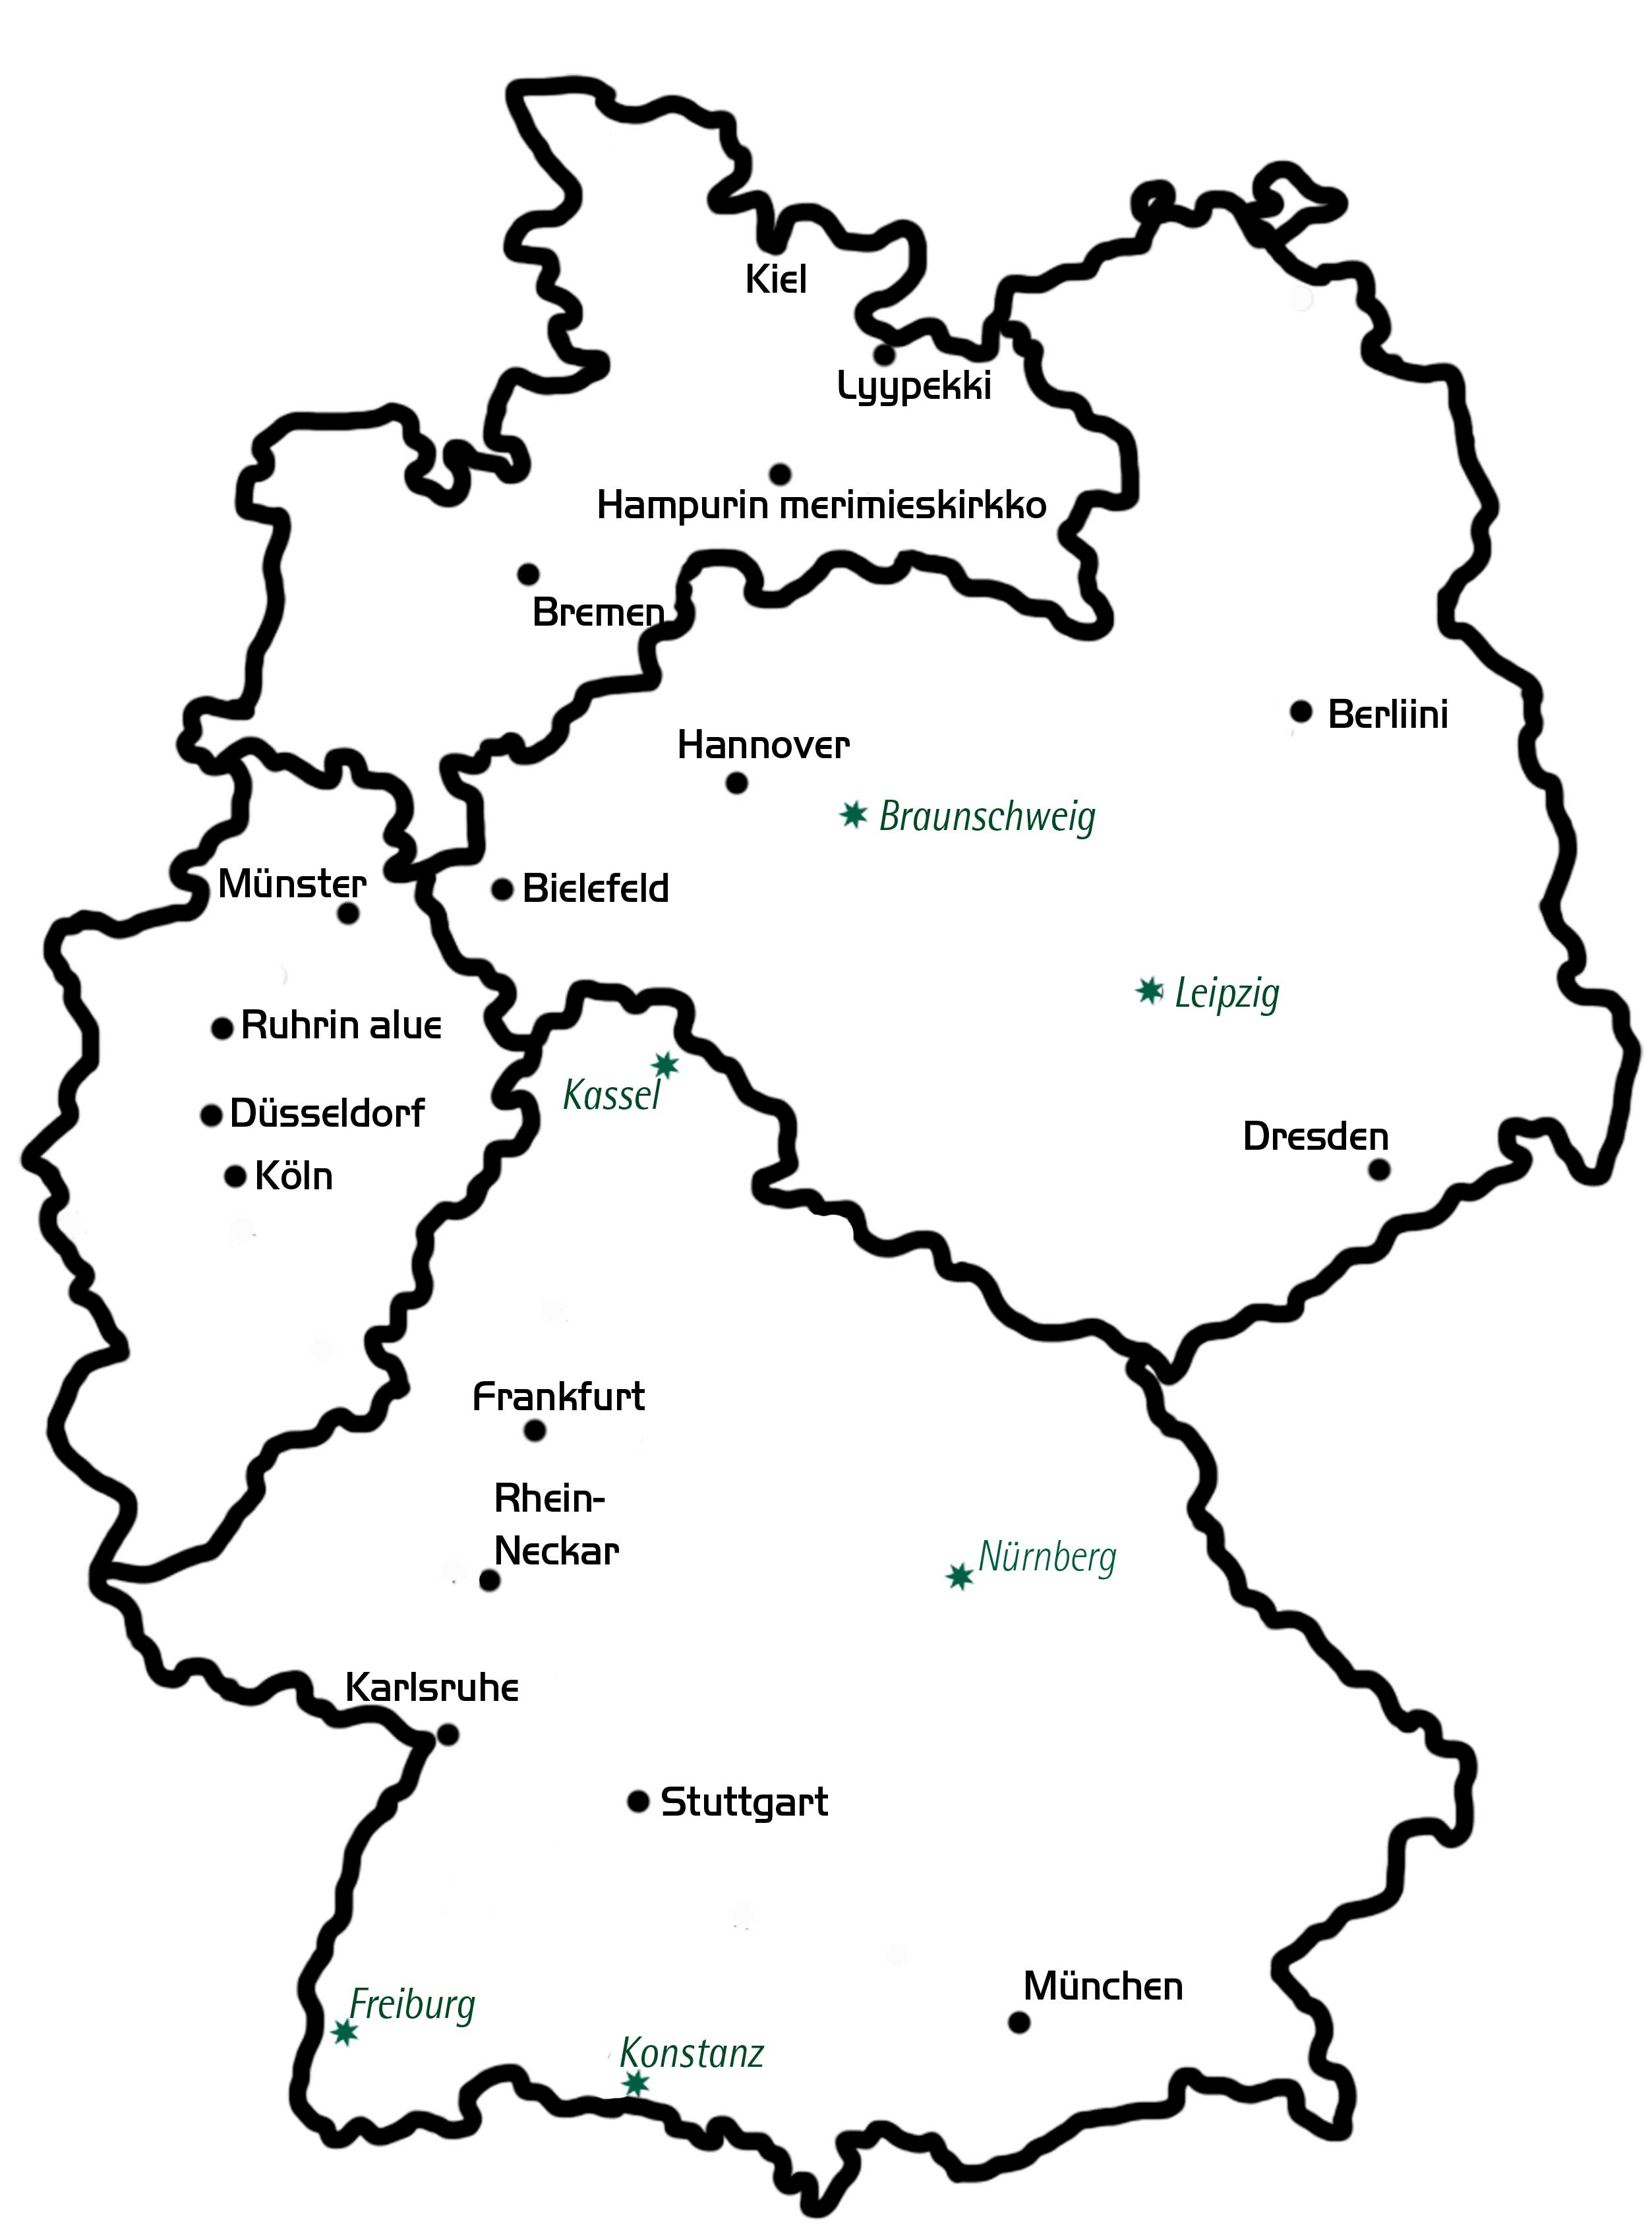 Eine Karte über die finnischen Gemeinden und Veranstaltungsorte in Deutschland